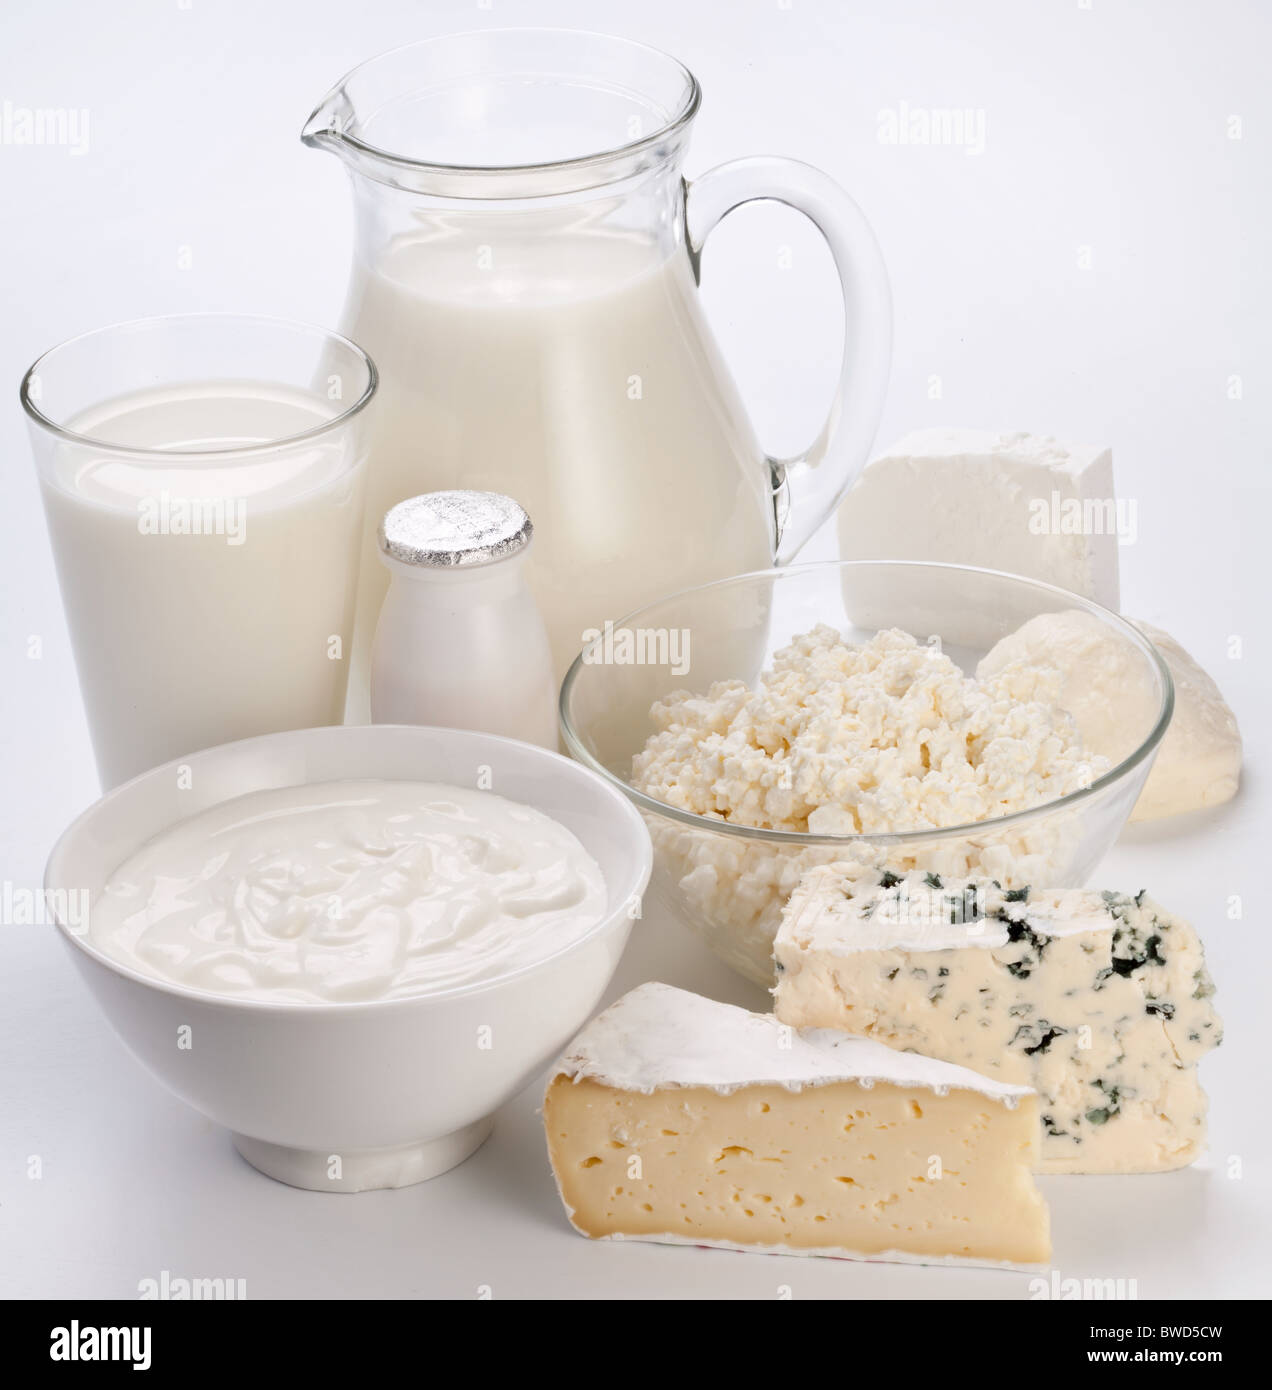 Différents produits laitiers : fromage, crème, lait, yaourt. Sur un fond blanc. Banque D'Images